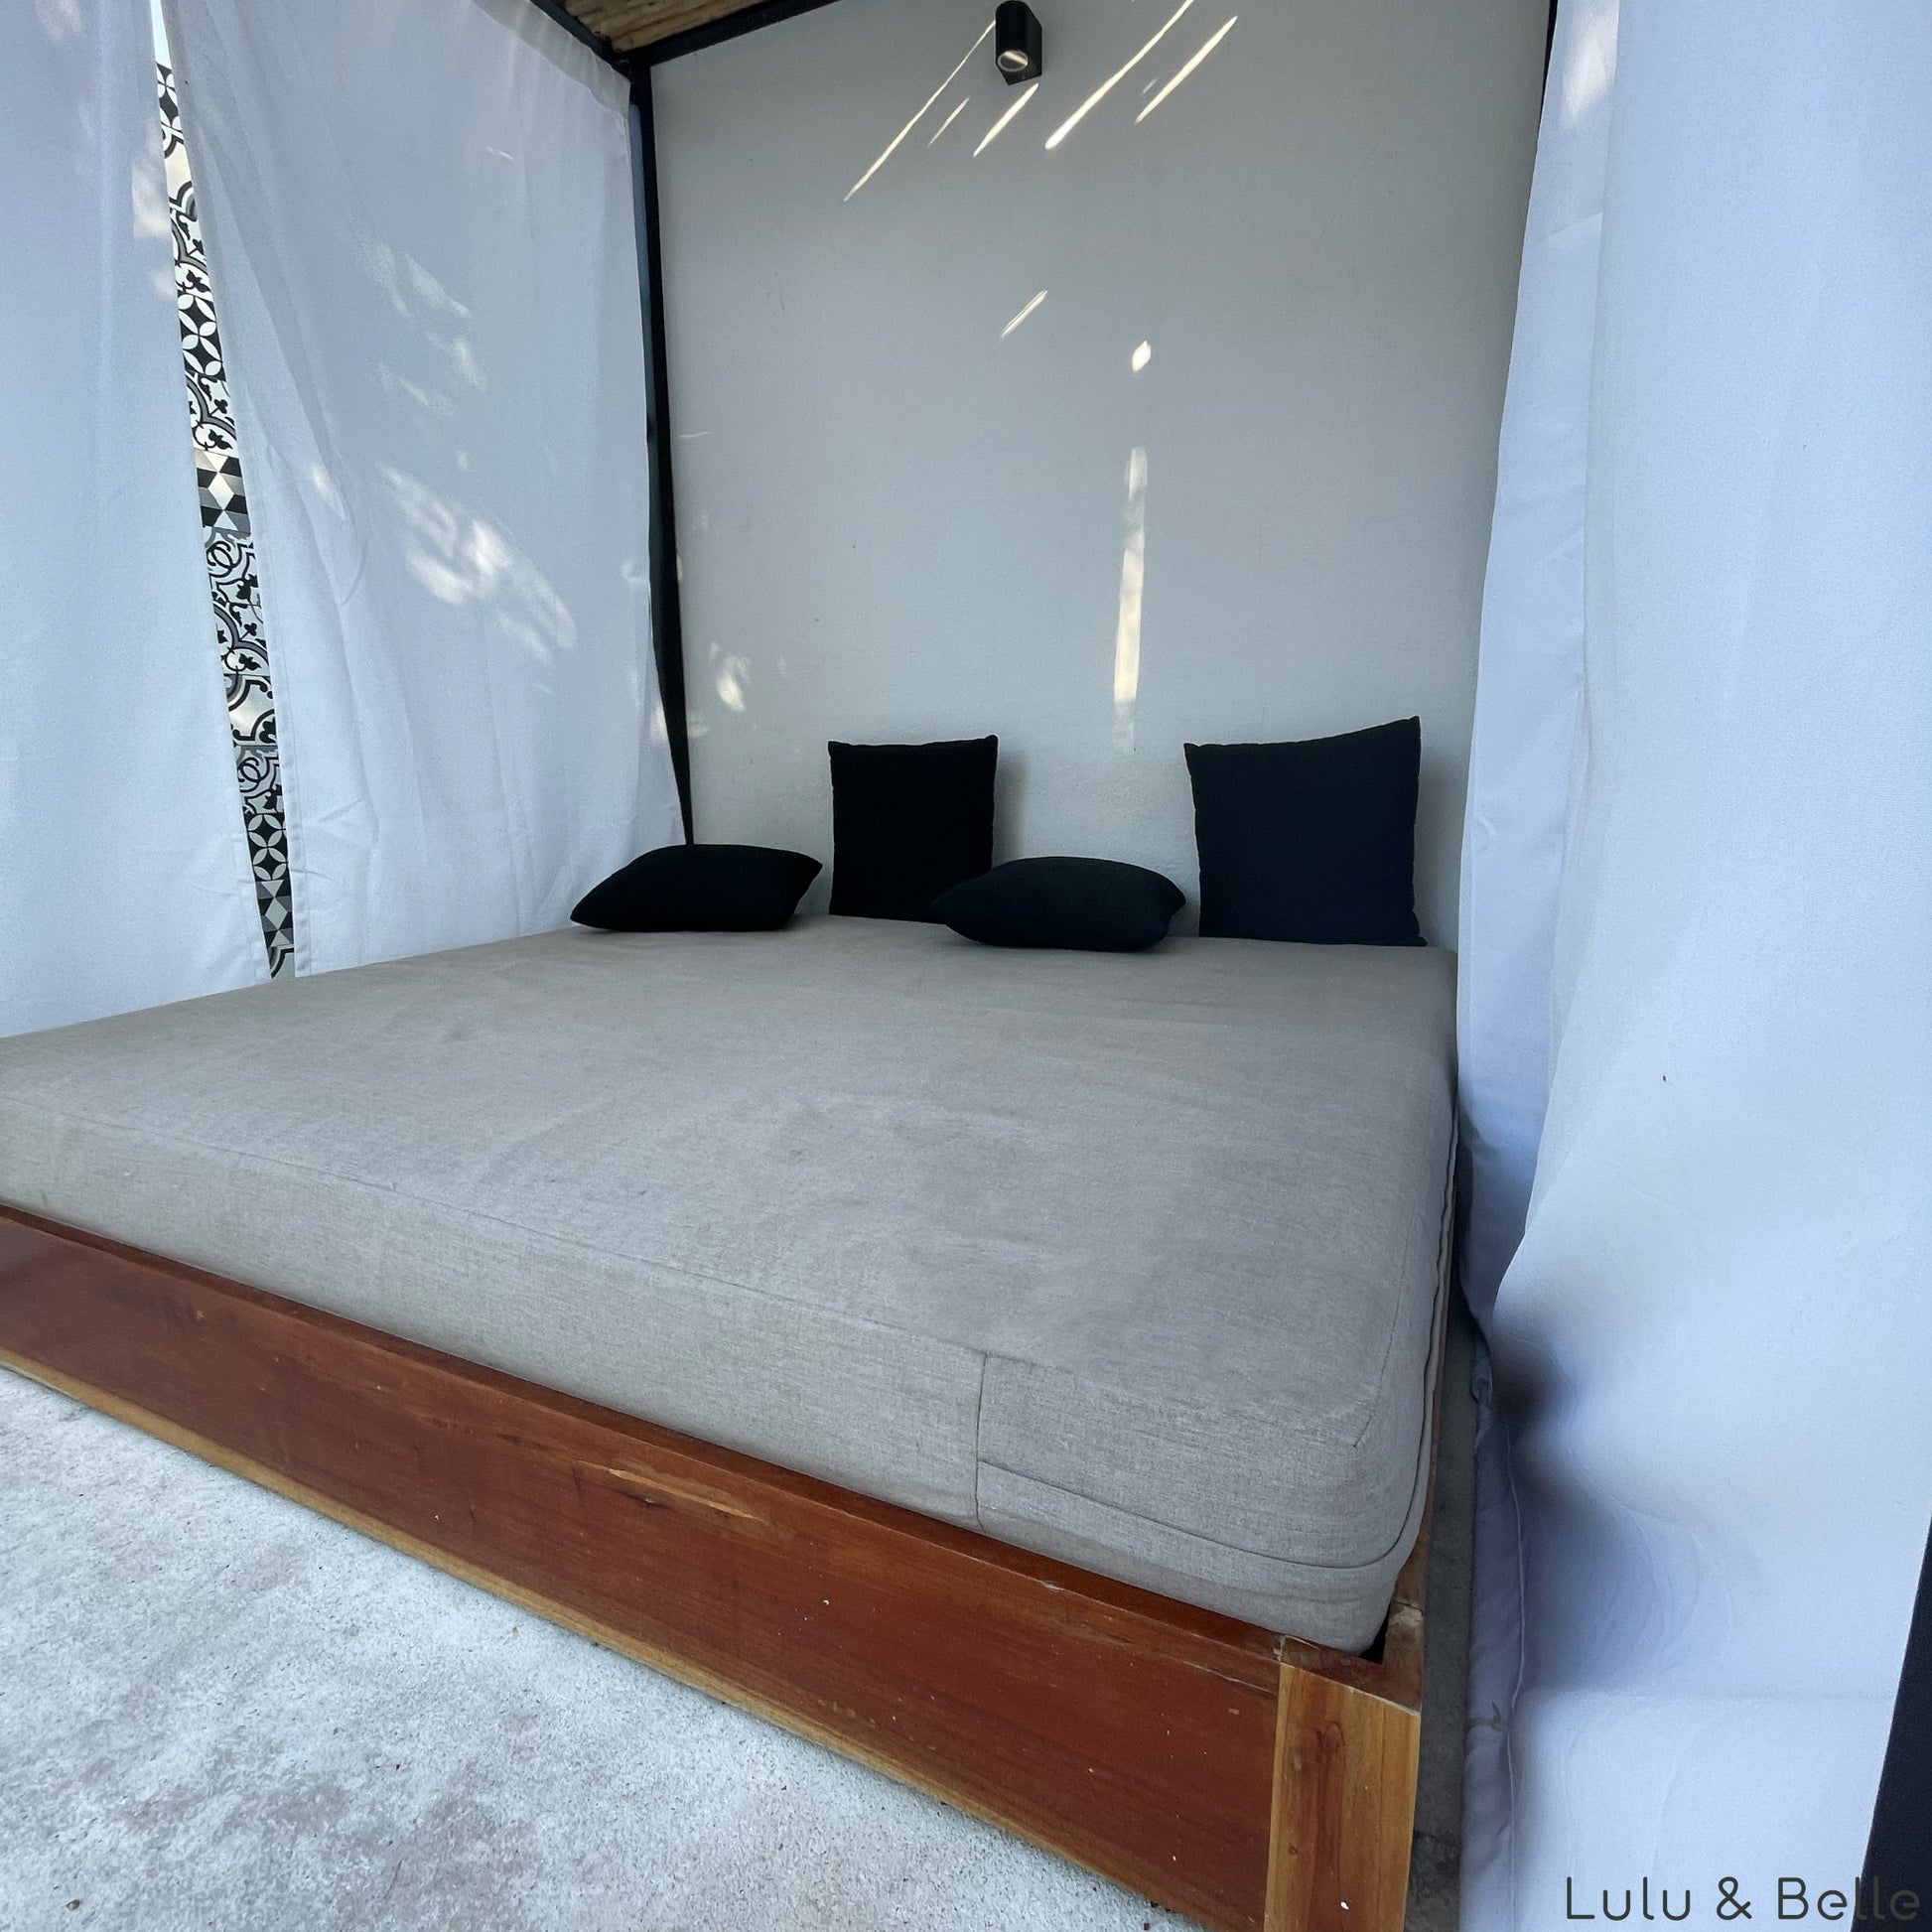 hochwertige und wetterfeste Outdoor Matratzen, Sitzkissen und Liegeauflagen